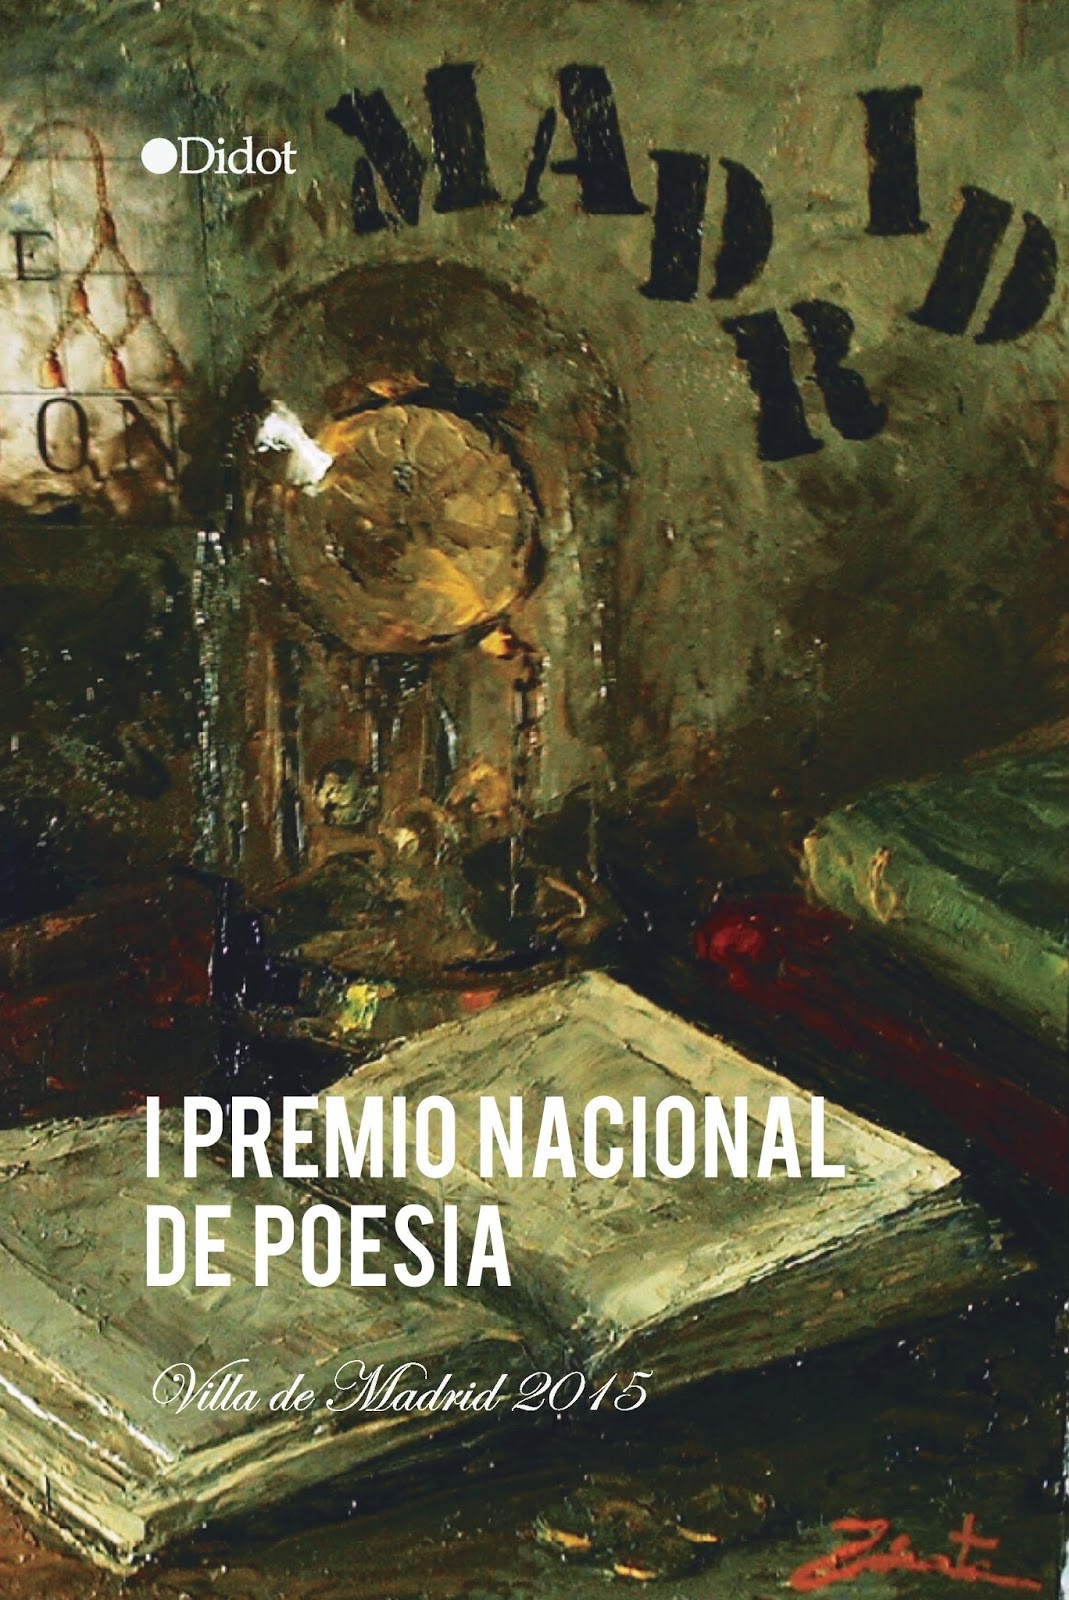 Portada libro del I Premio Nacional de Poesía Villa de Madrid 2015